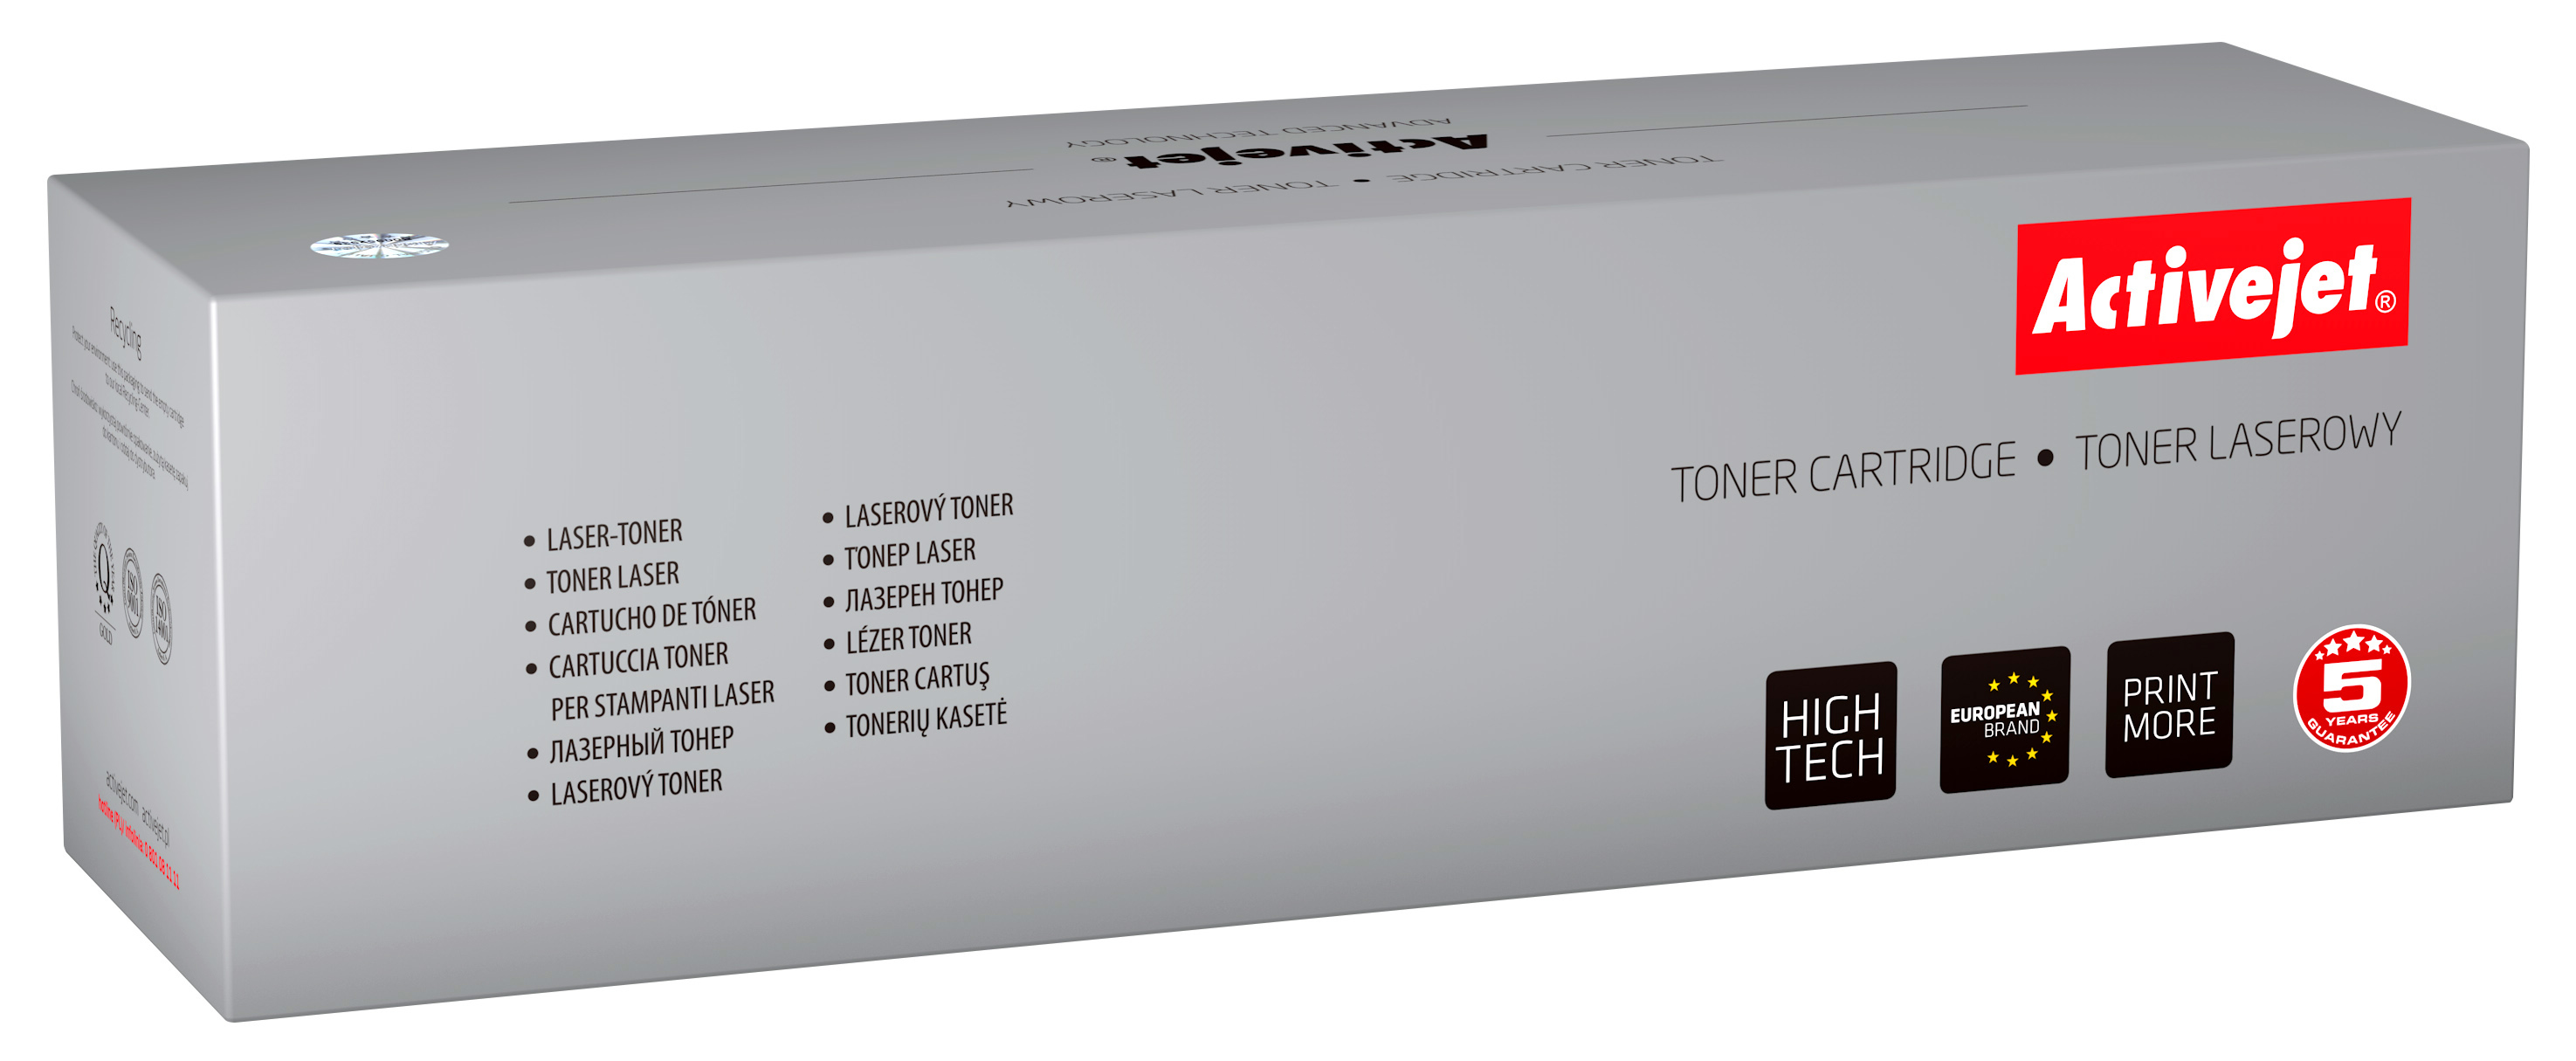 Toner Activejet ATS-Y406AN do drukarki Samsung, Zamiennik Samsung CLT-Y406S;  Premium;  1000 stron;  żółty.